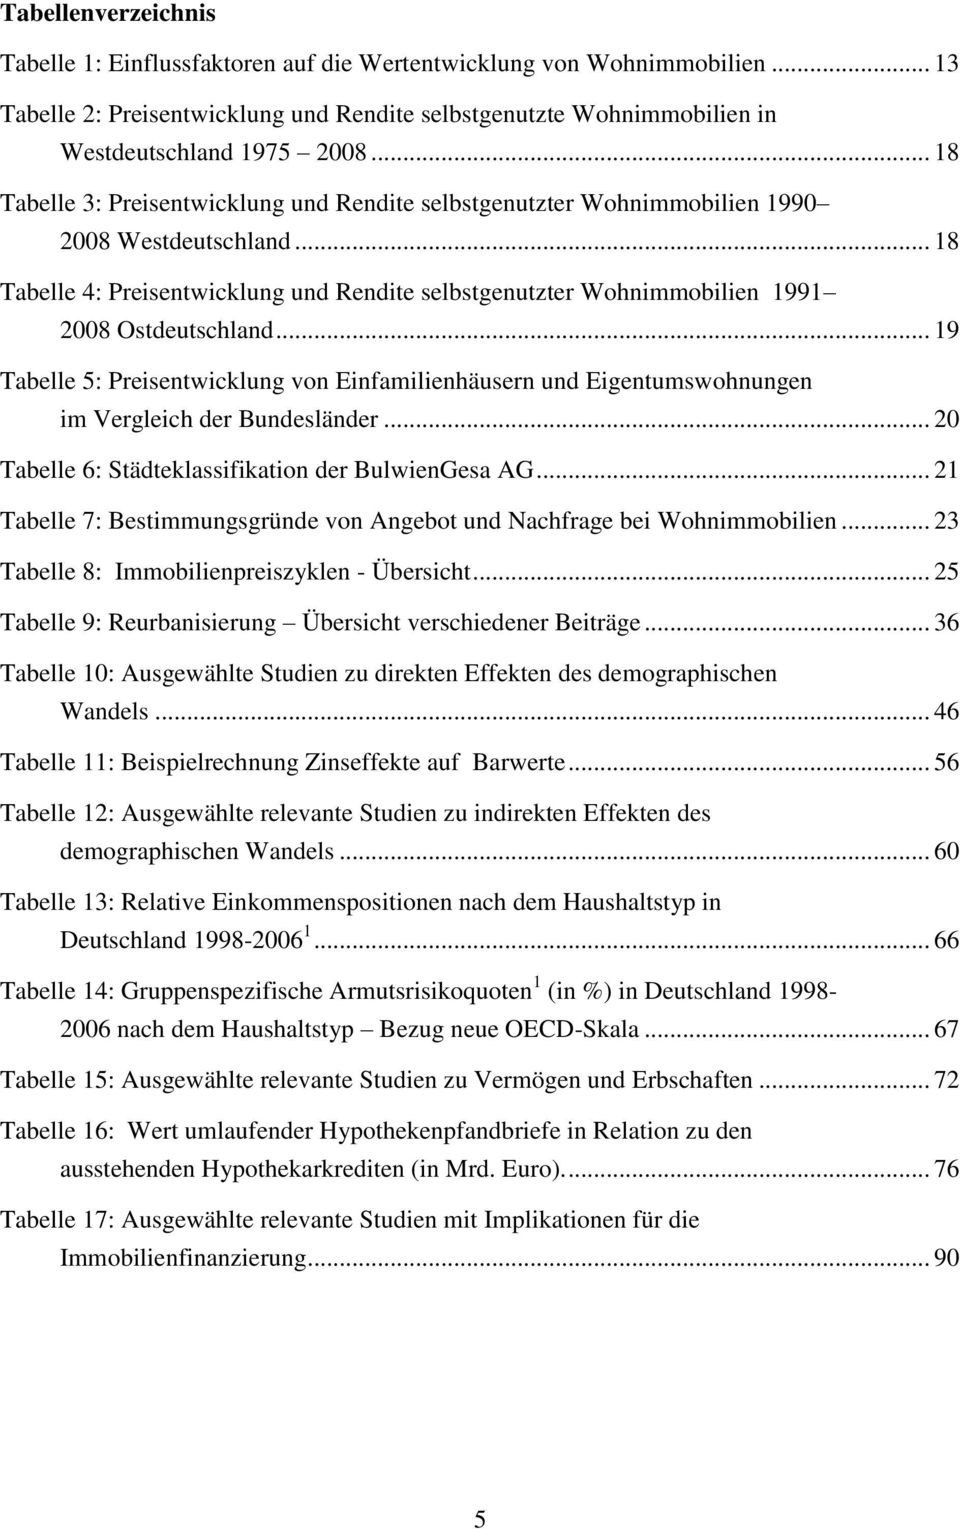 .. 18 Tabelle 4: Preisentwicklung und Rendite selbstgenutzter Wohnimmobilien 1991 2008 Ostdeutschland.